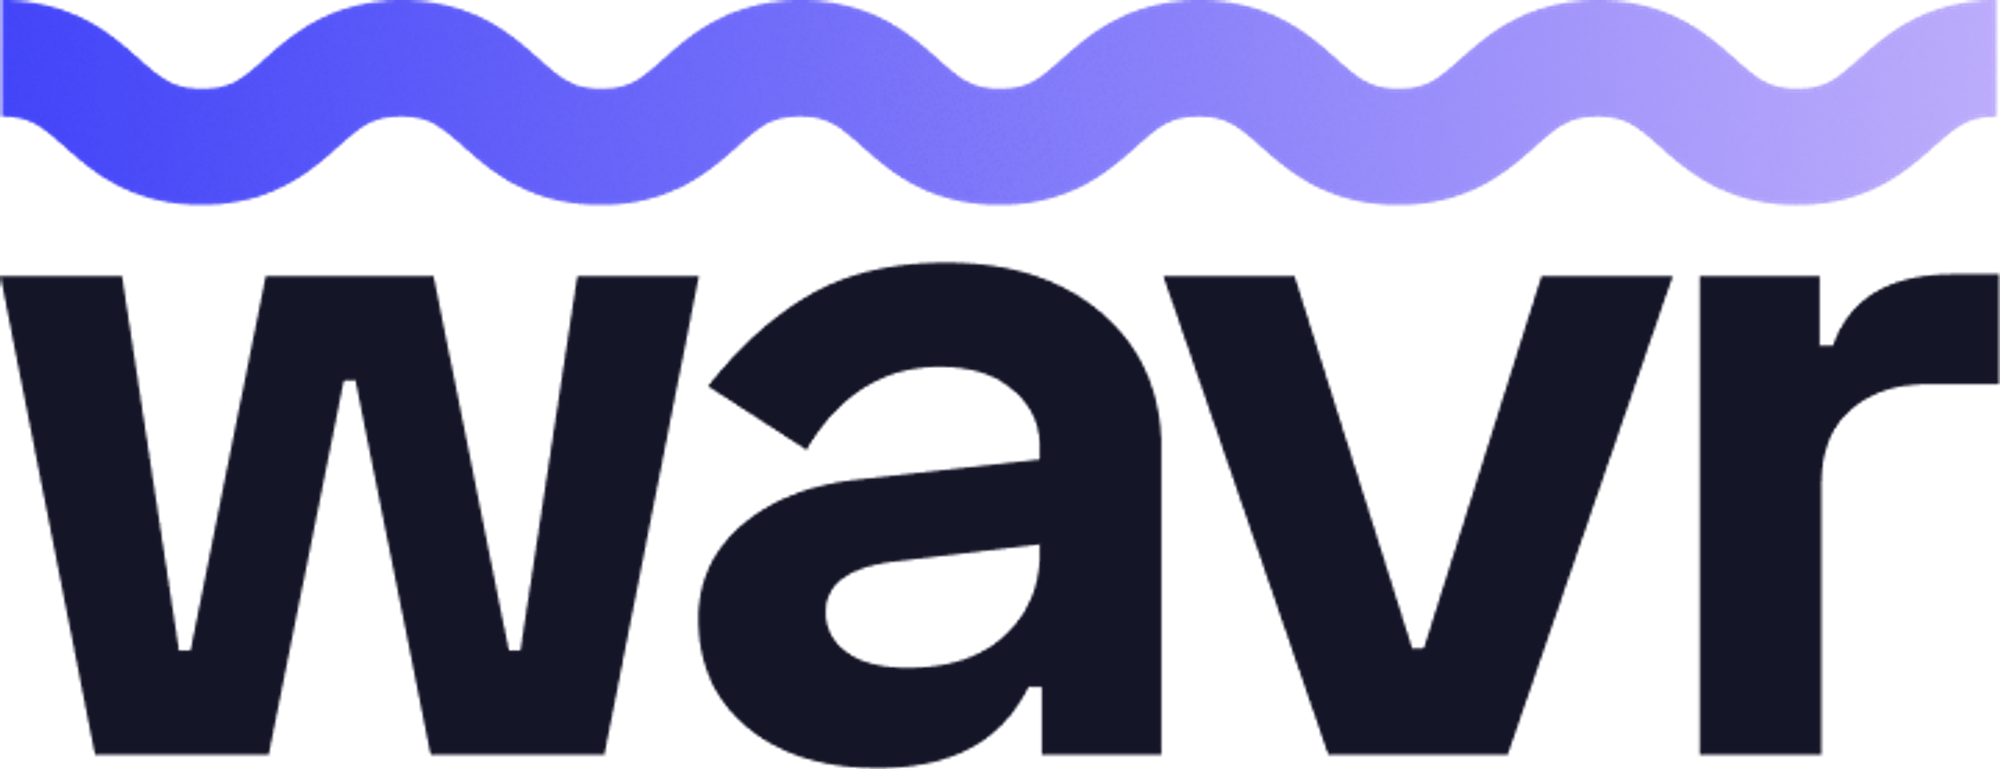 wavr.so Logo